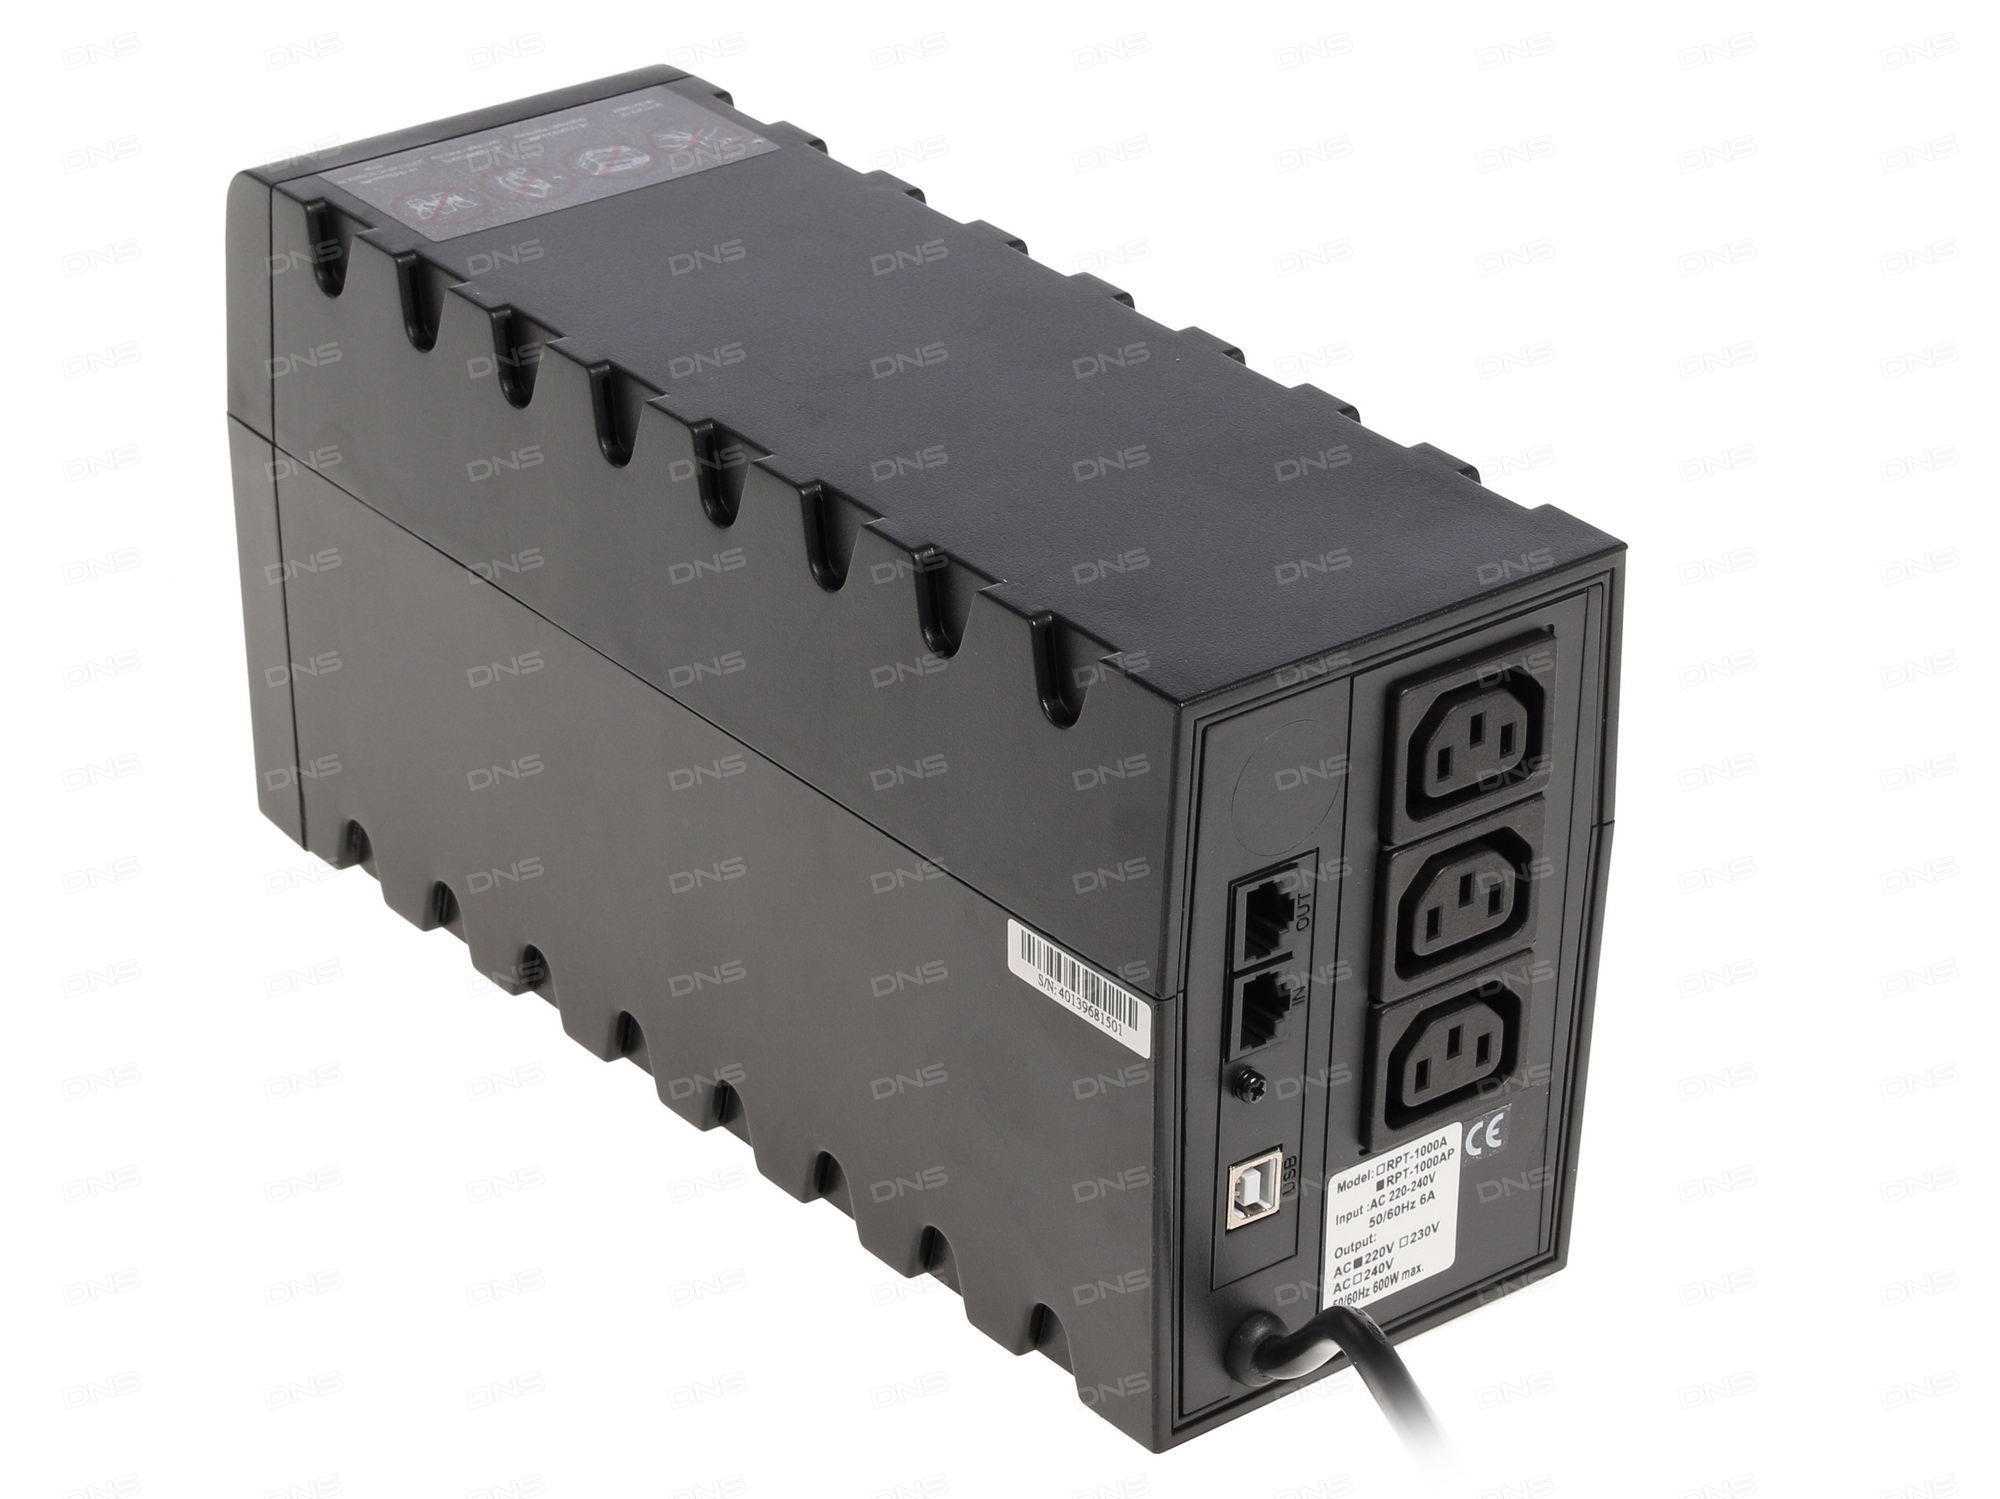 Powercom RAPTOR RPT-1500AP - короткий но максимально информативный обзор Для большего удобства добавлены характеристики отзывы и видео